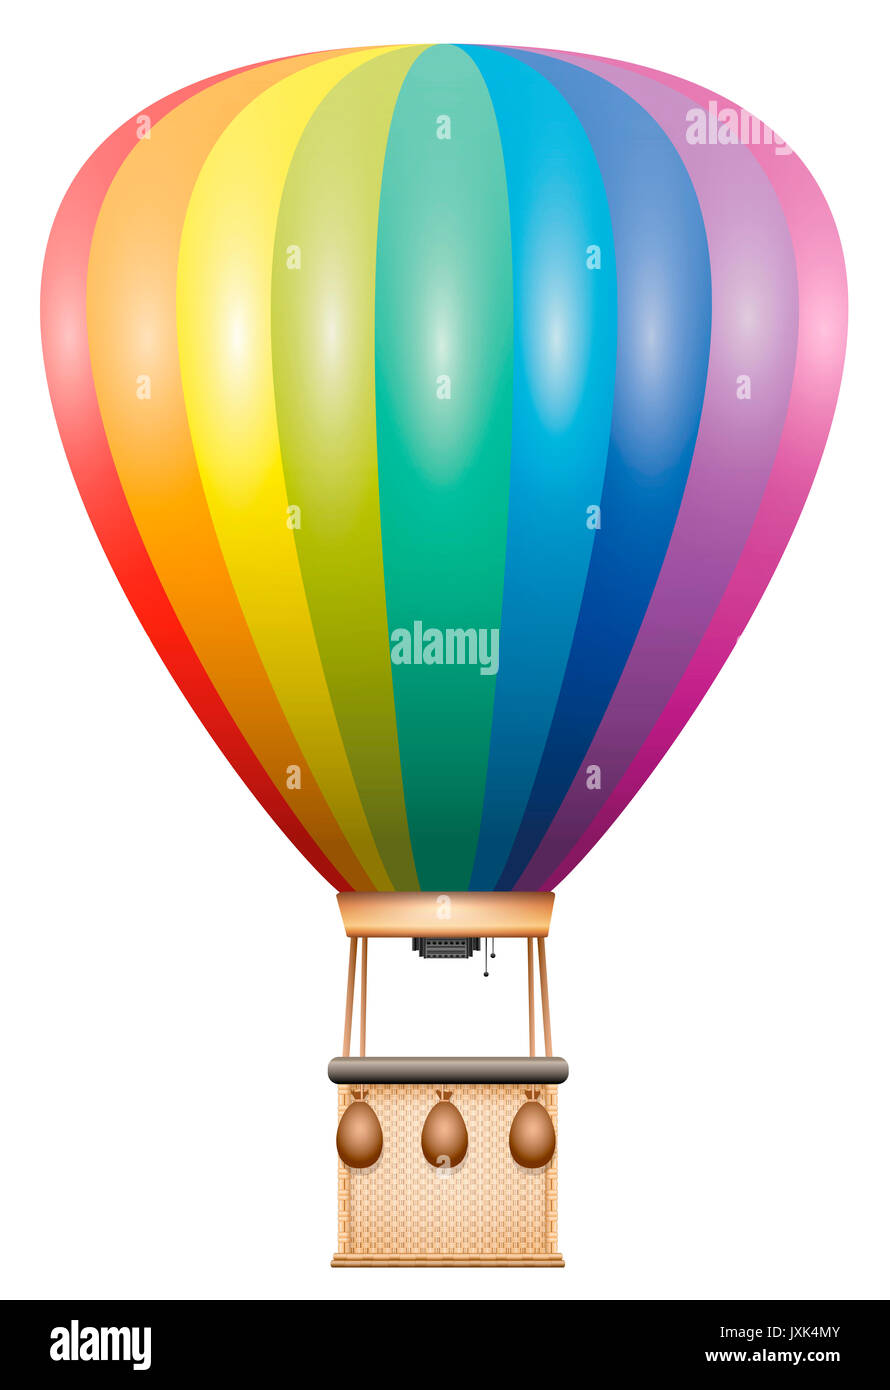 Fesselballon - Regenbogen farbige flying Fahrzeug mit Korb und Sandsäcke - Abbildung auf weißem Hintergrund. Stockfoto